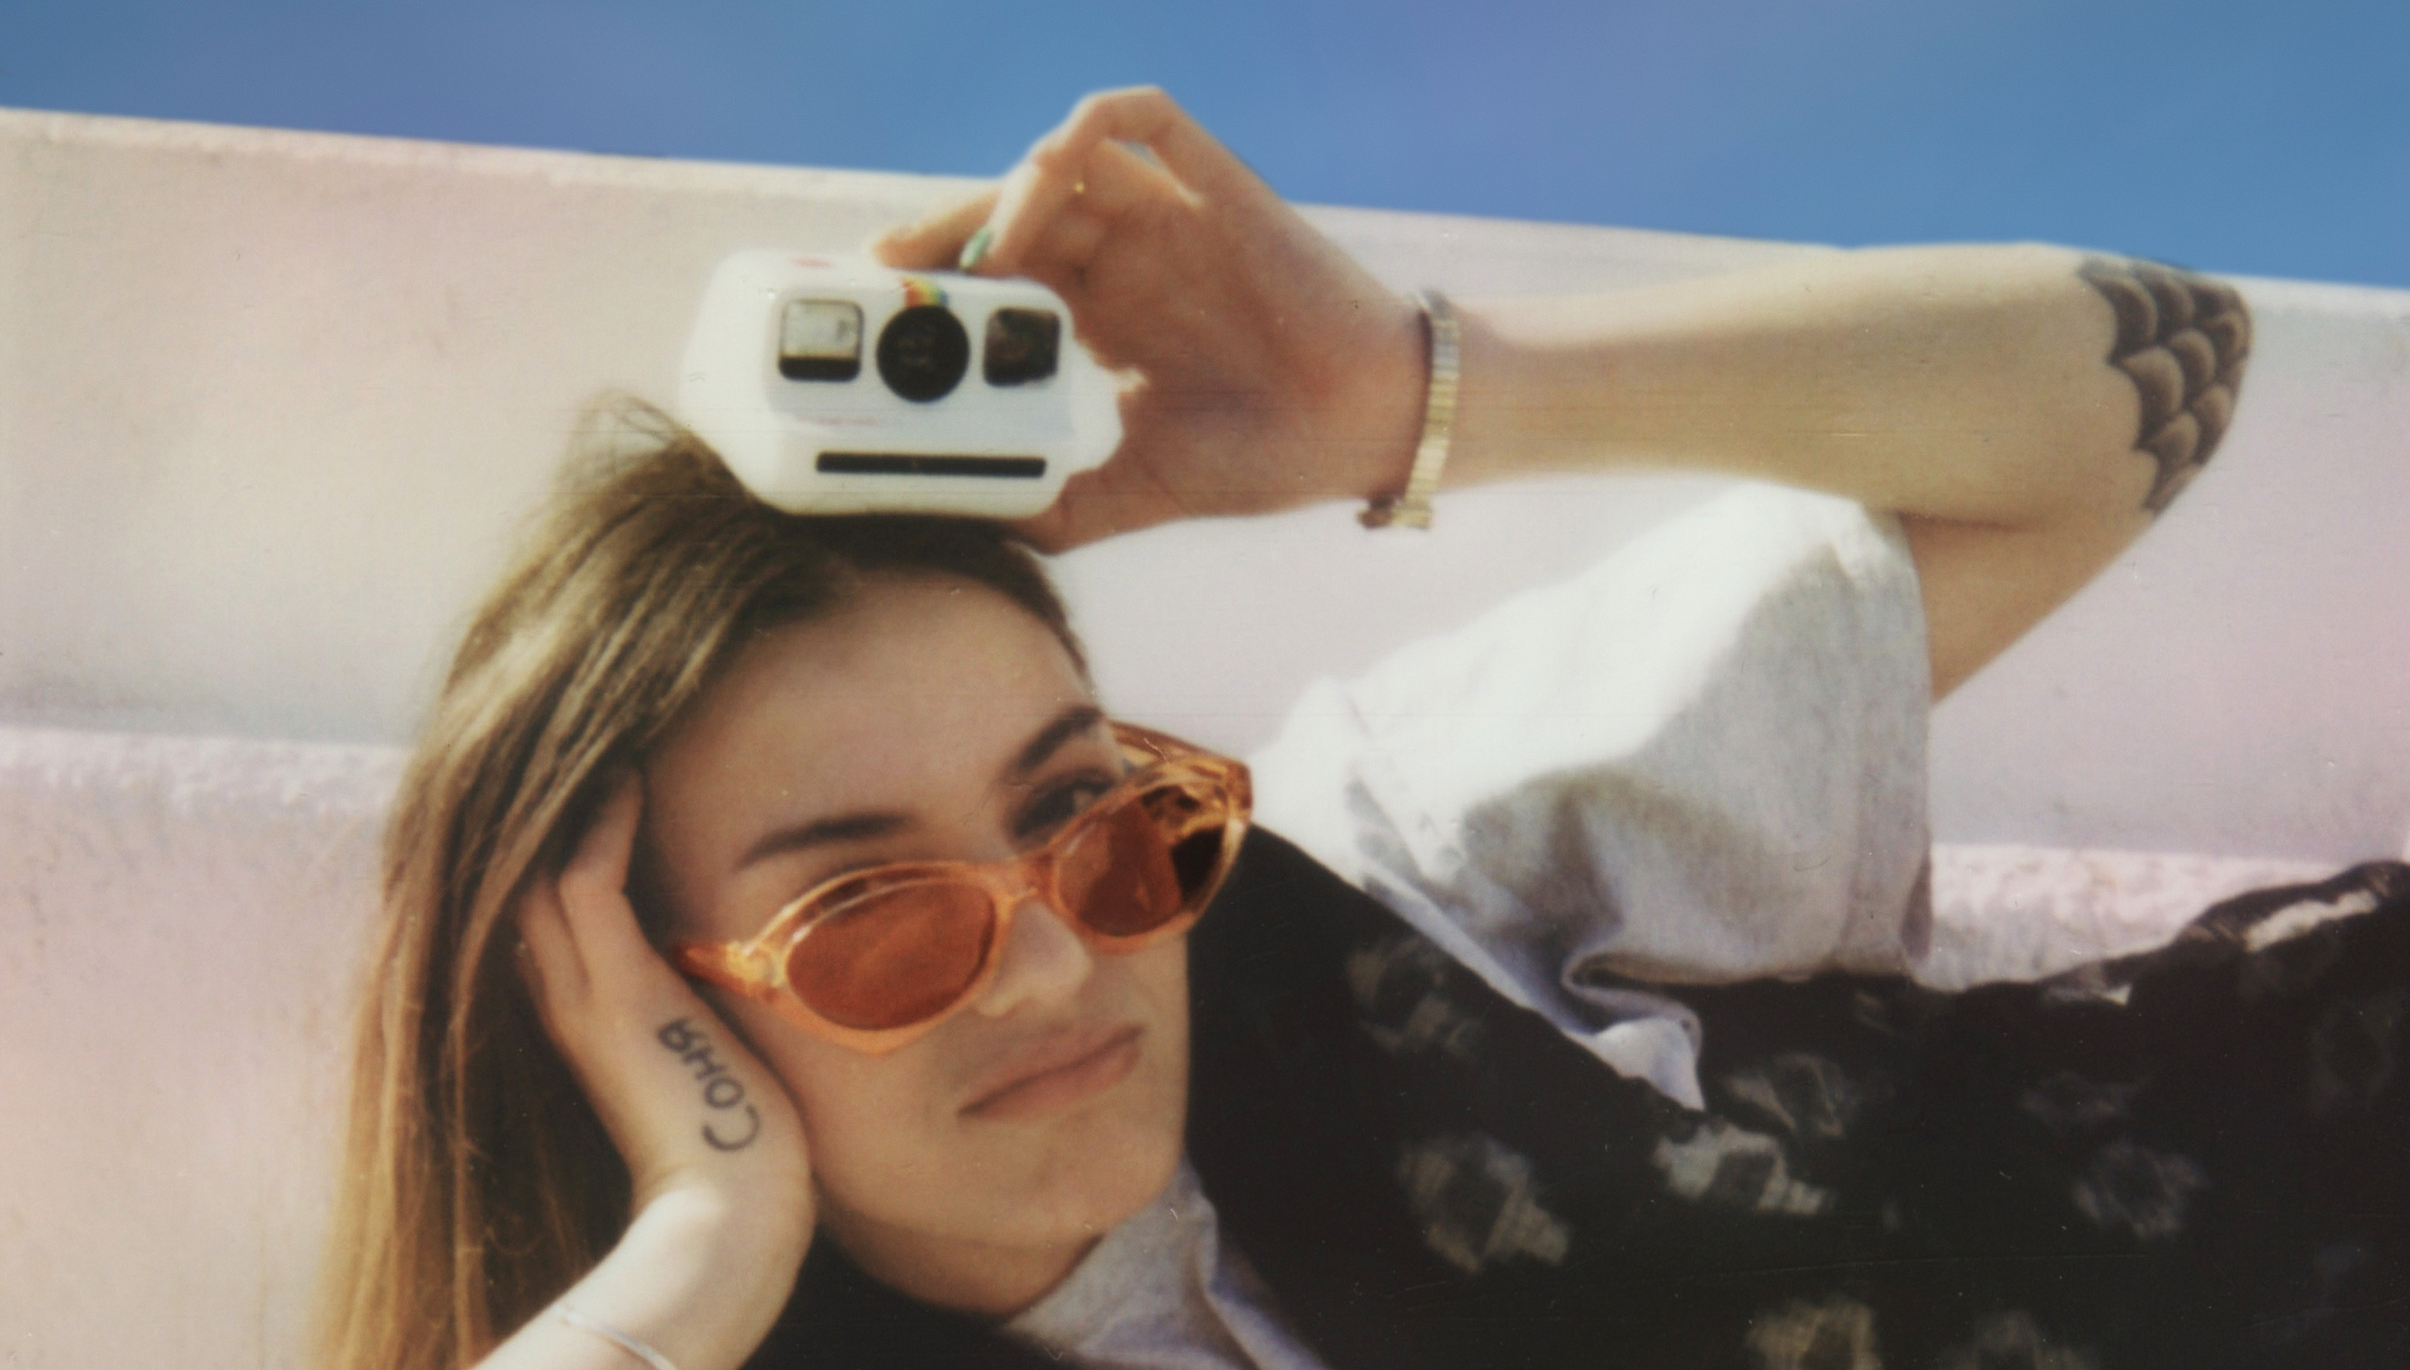 Die Polaroid Go funktioniert wie die klassischen Polaroid-Kameras, bloß ist sie kleiner und benötigt deswegen ein kleinere Filmformat. (c) Polaroid